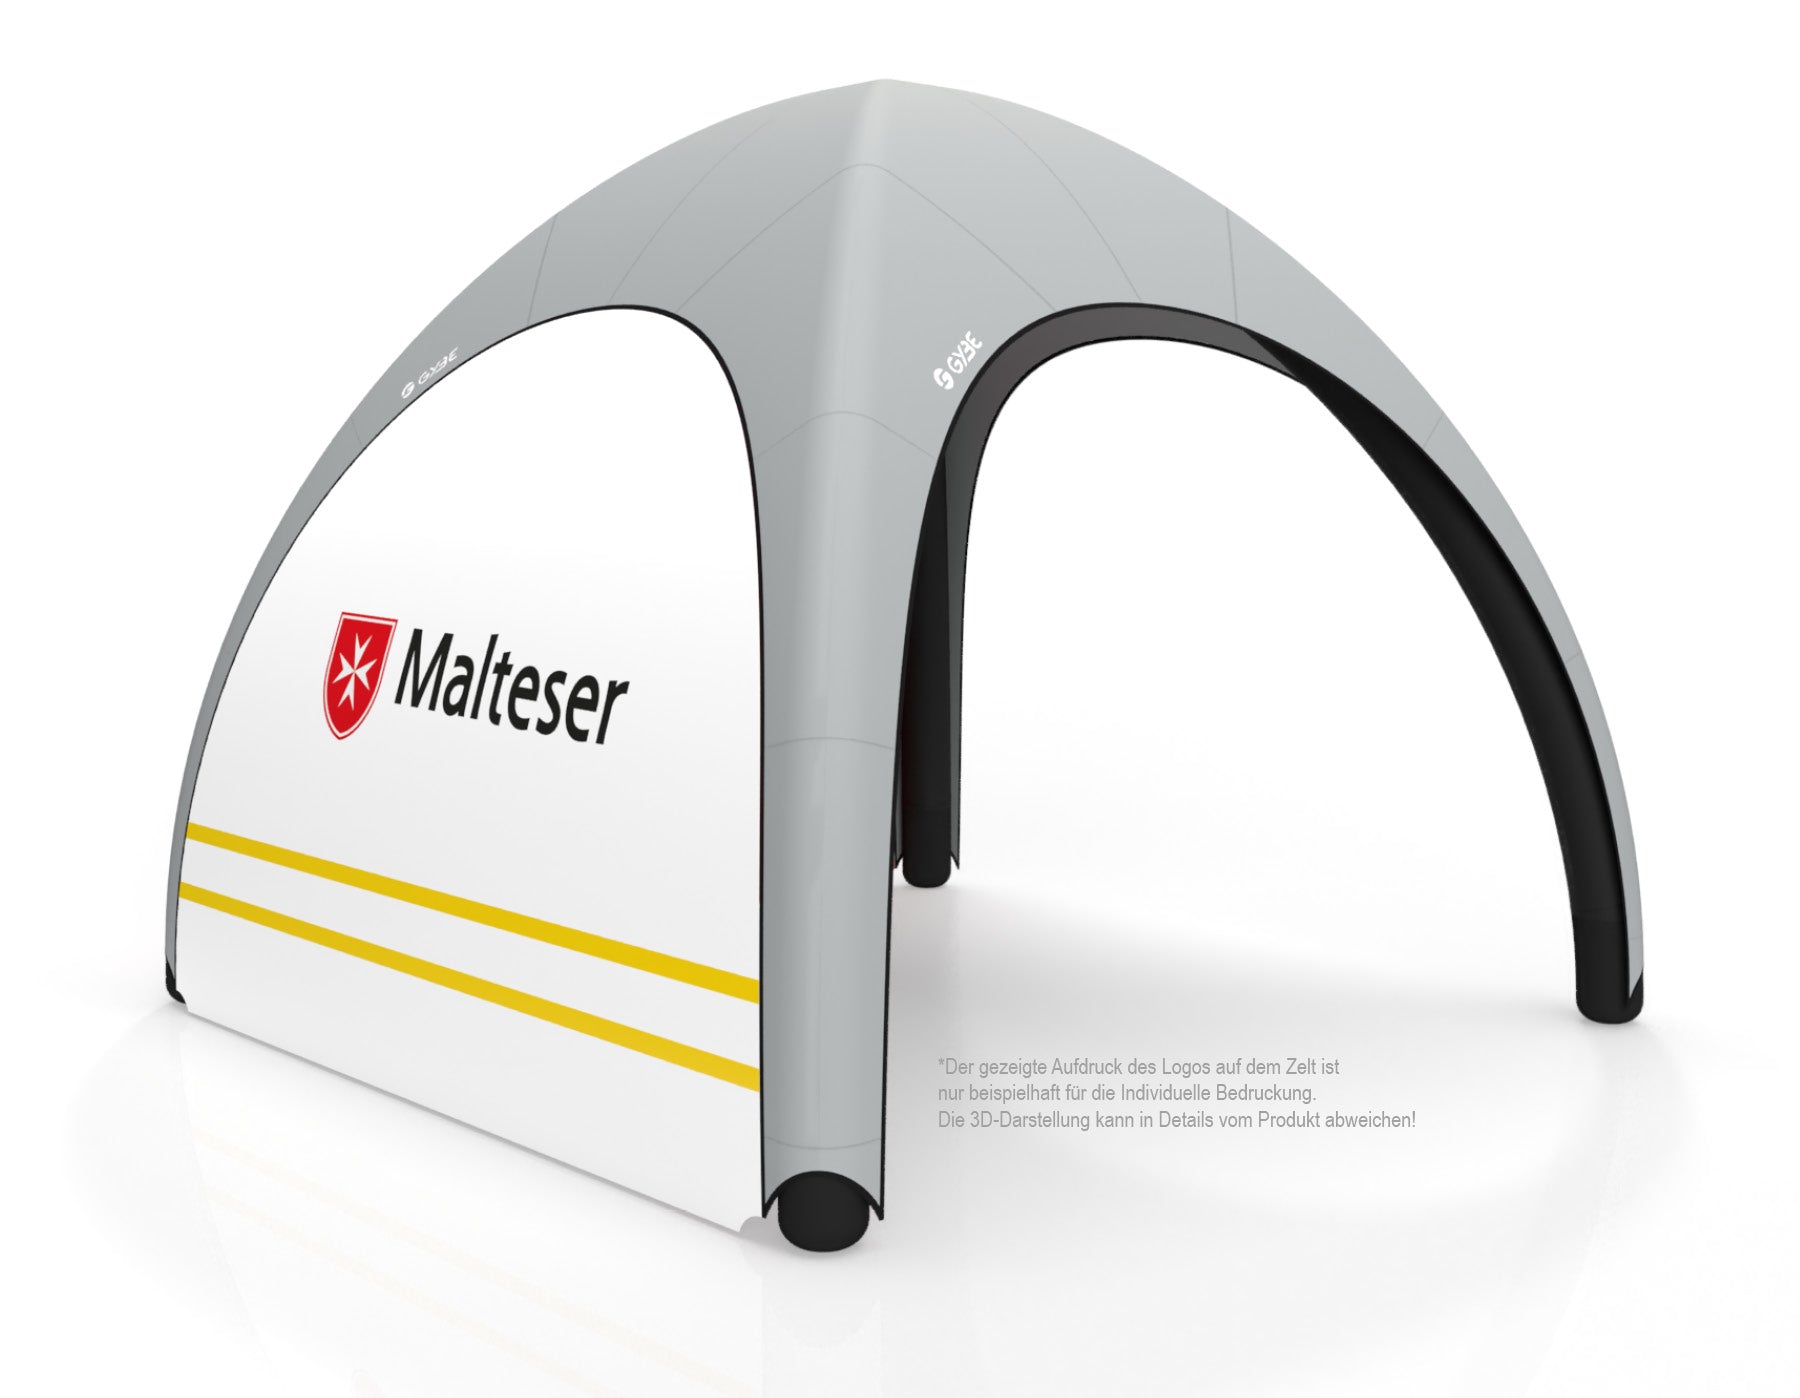 Aufblasbares Schnelleinsatzzelt Gybe Humanity Tent mit Malteser Logo | Sanitätszelt | Einsatzzelt